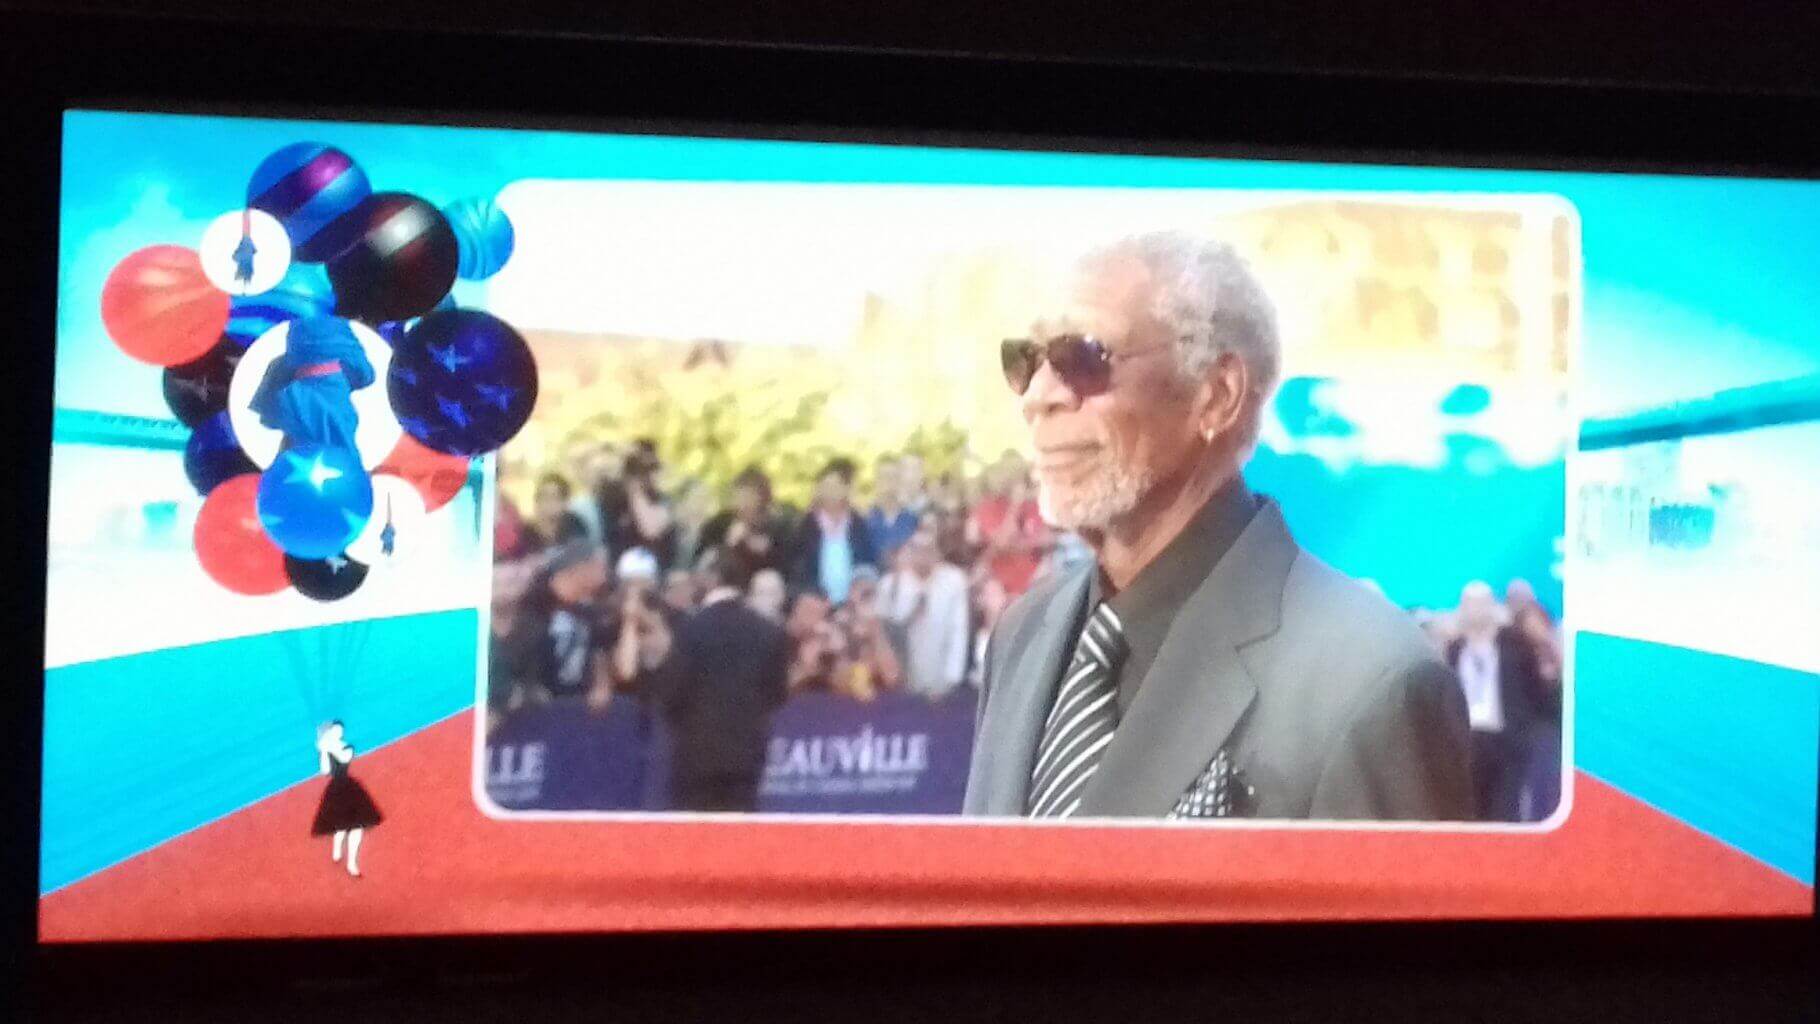 81 ans, allure de vieux sage, l'acteur Morgan Freeman a mis le public dans sa poche avec un discours en français.